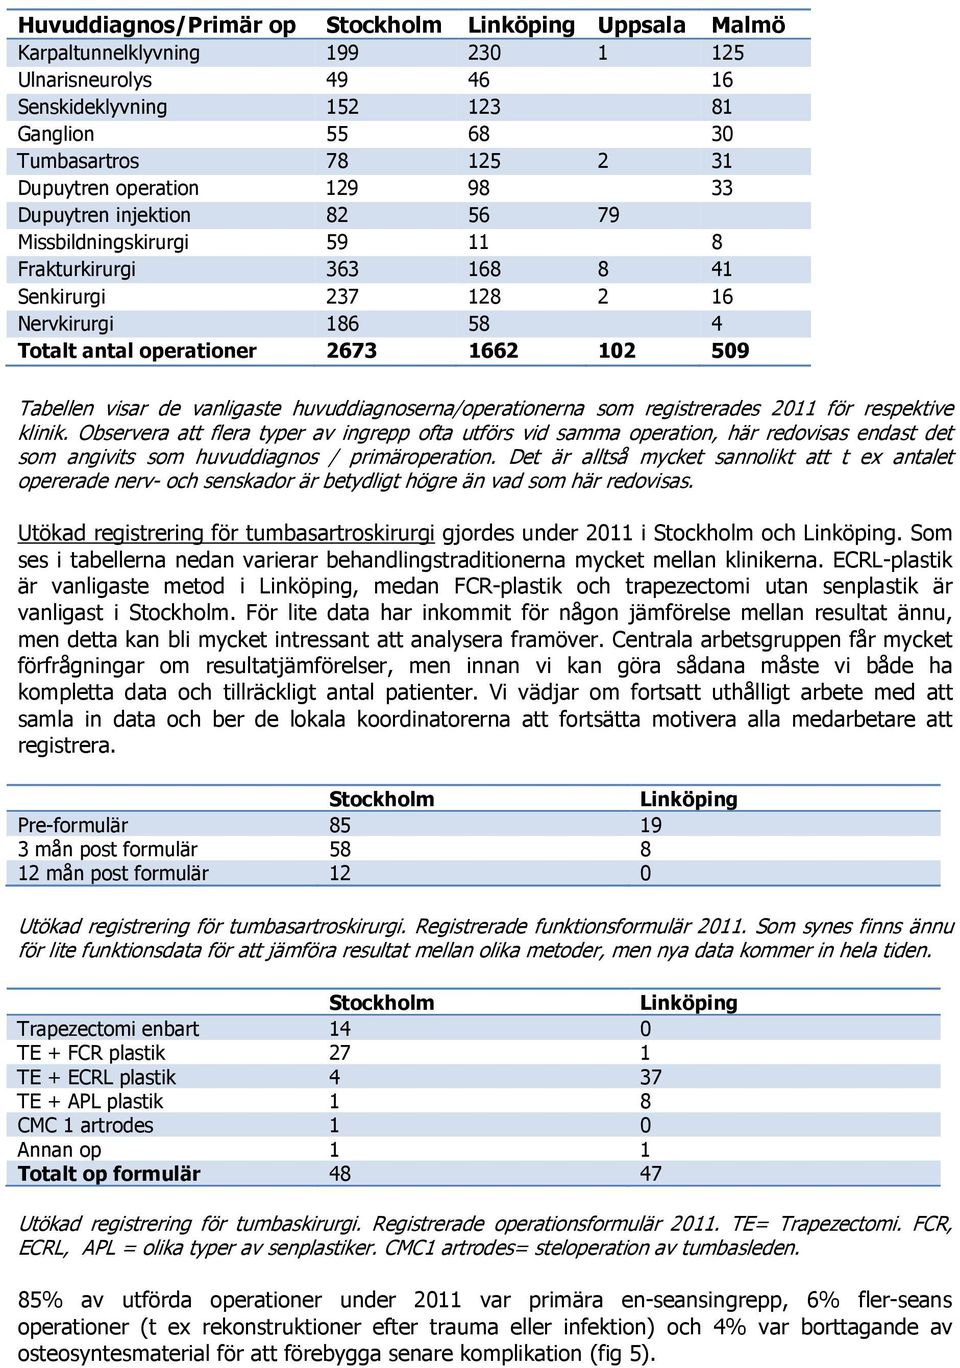 Tabellen visar de vanligaste huvuddiagnoserna/operationerna som registrerades 2011 för respektive klinik.